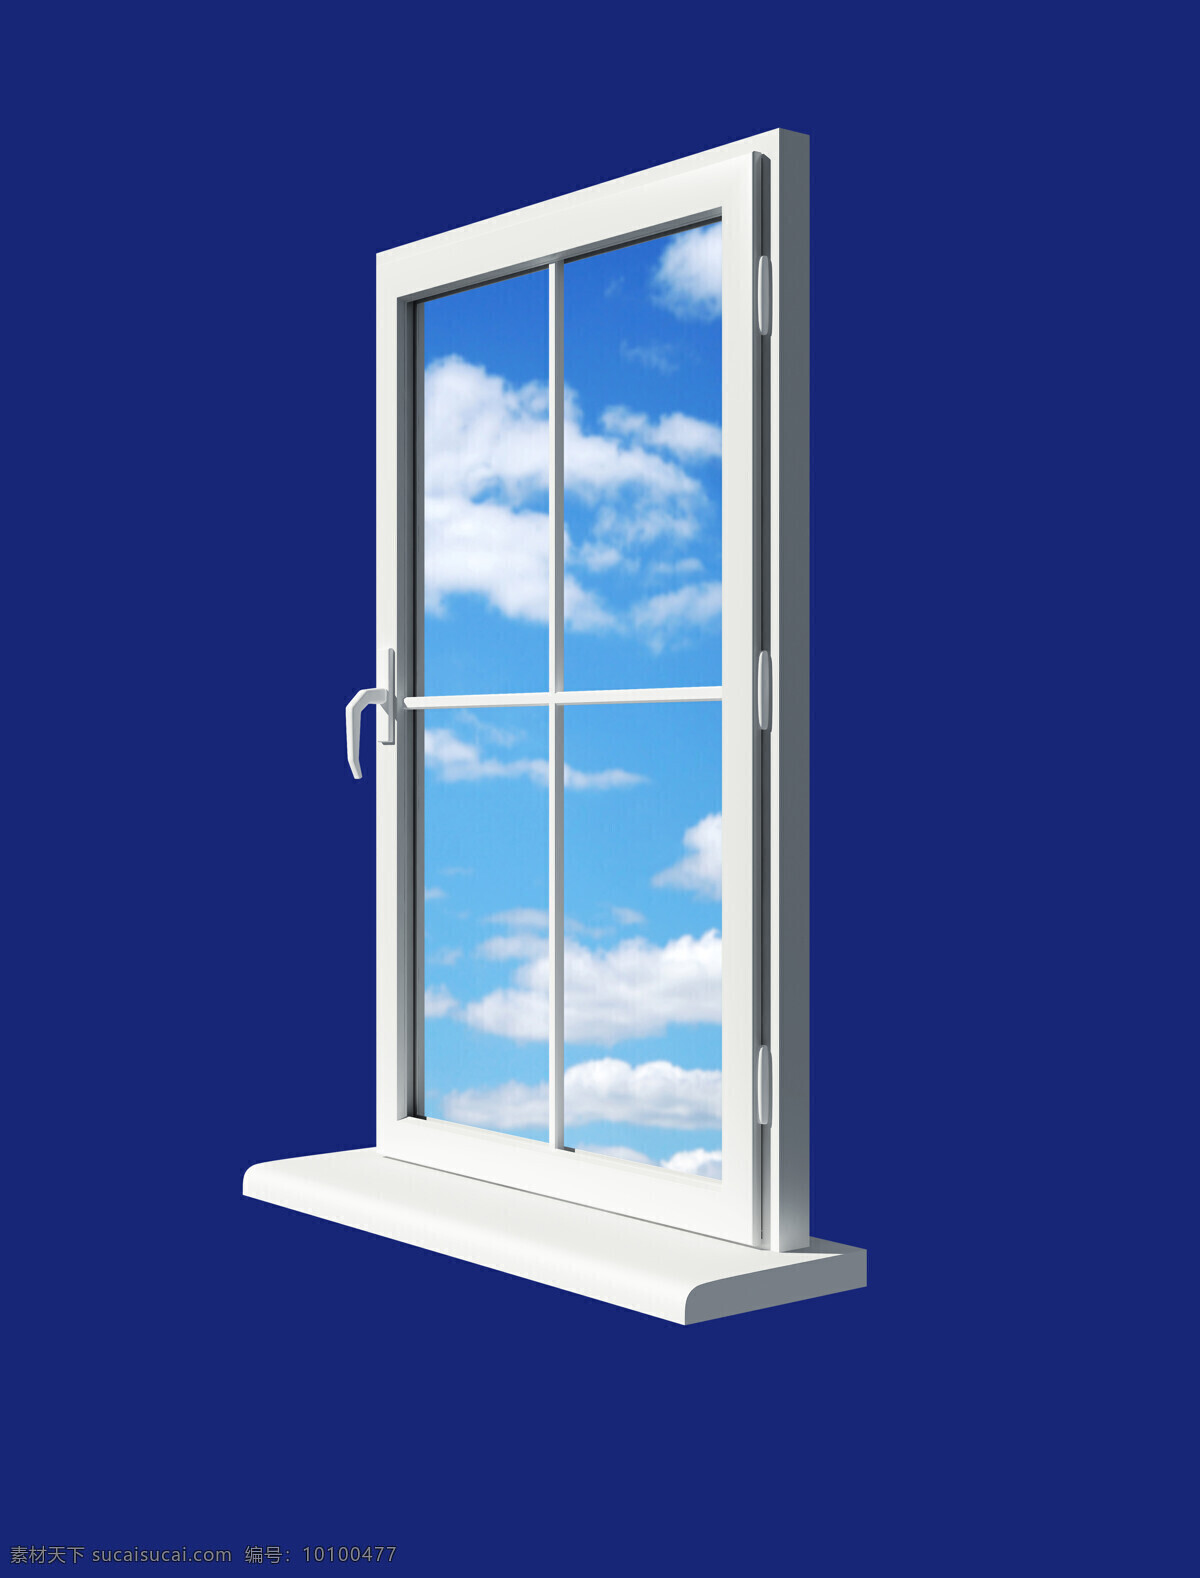 窗外 蓝天 门窗 窗子 明朗 装潢 窗 玻璃窗 其他类别 环境家居